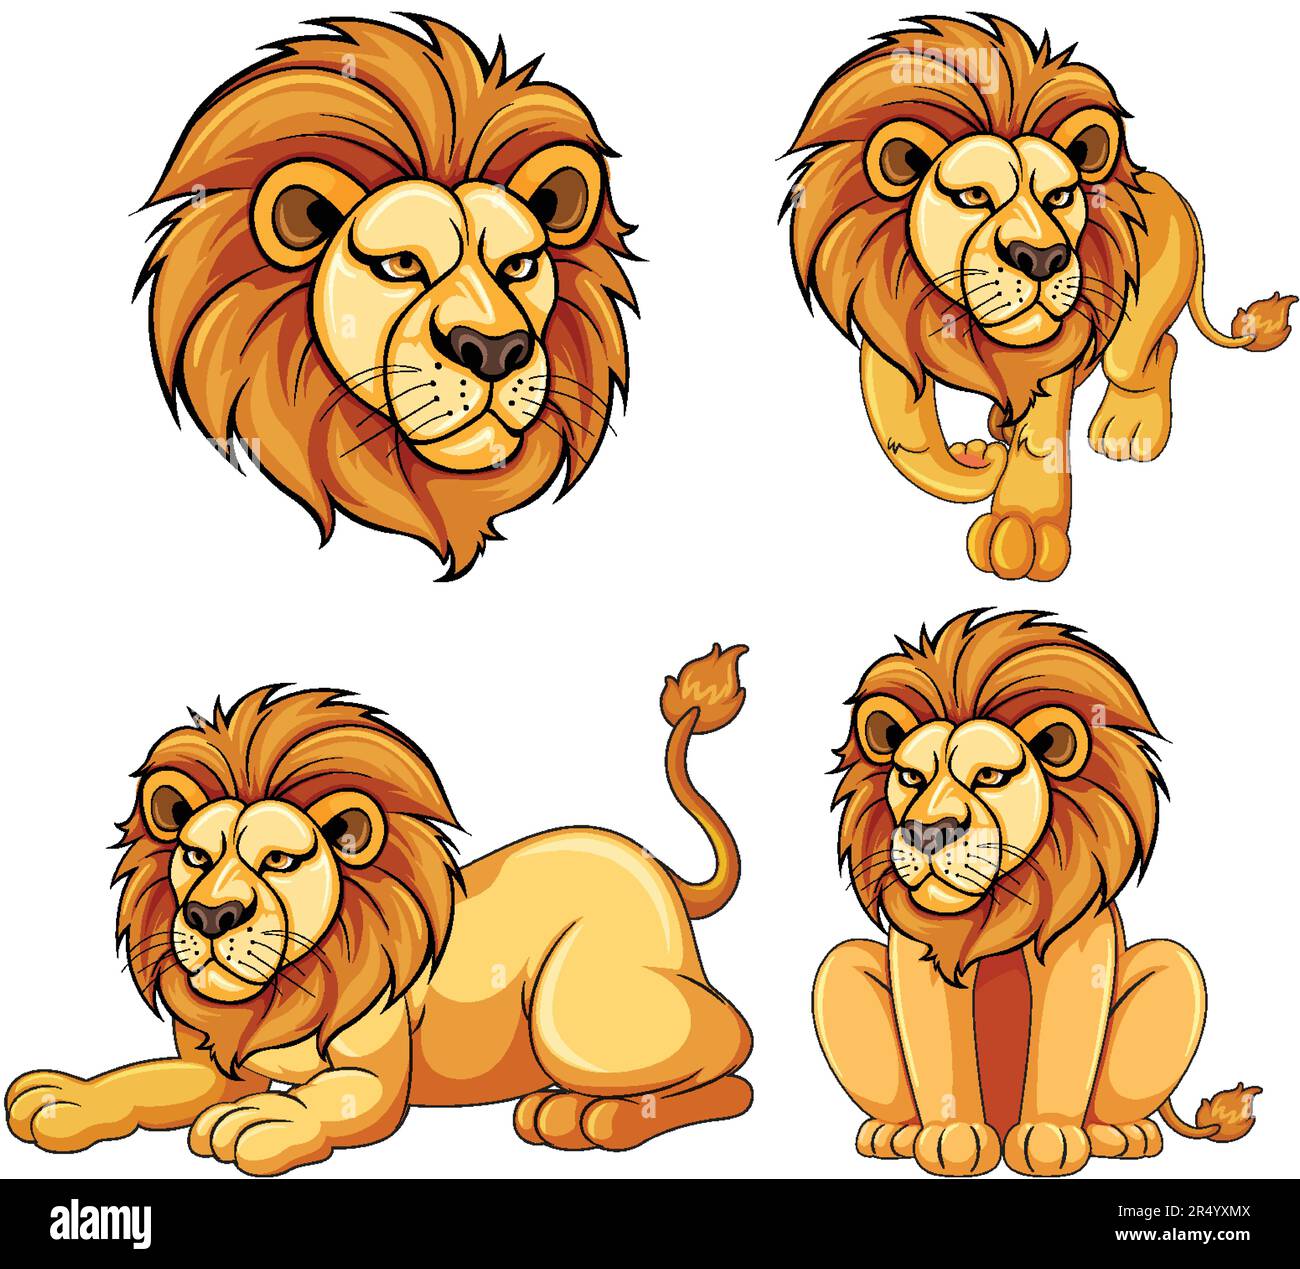 Ensemble de dessin animé lion dans une illustration de posture diffrente Illustration de Vecteur